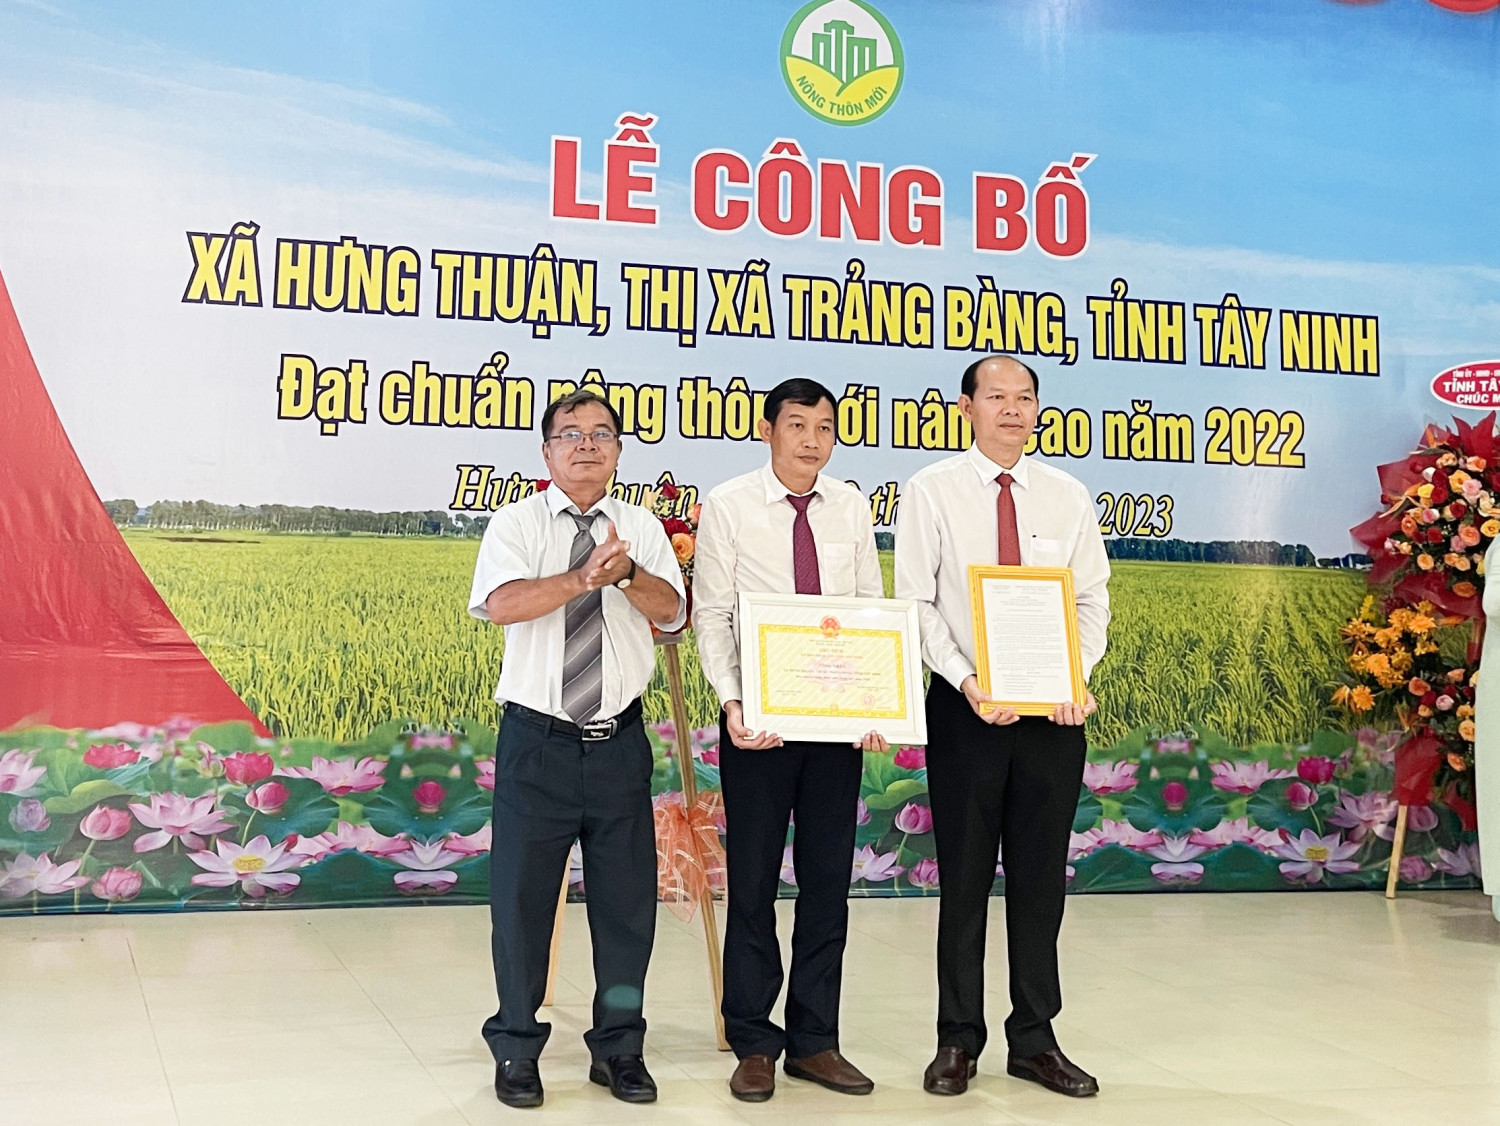 Ông Nguyễn Văn Mấy – Phó Giám đốc Sở Nông nghiệp và Phát triển nông thôn tỉnh trao bằng công nhận xã đạt chuẩn nông thôn mới nâng cao cho xã Hưng Thuận.